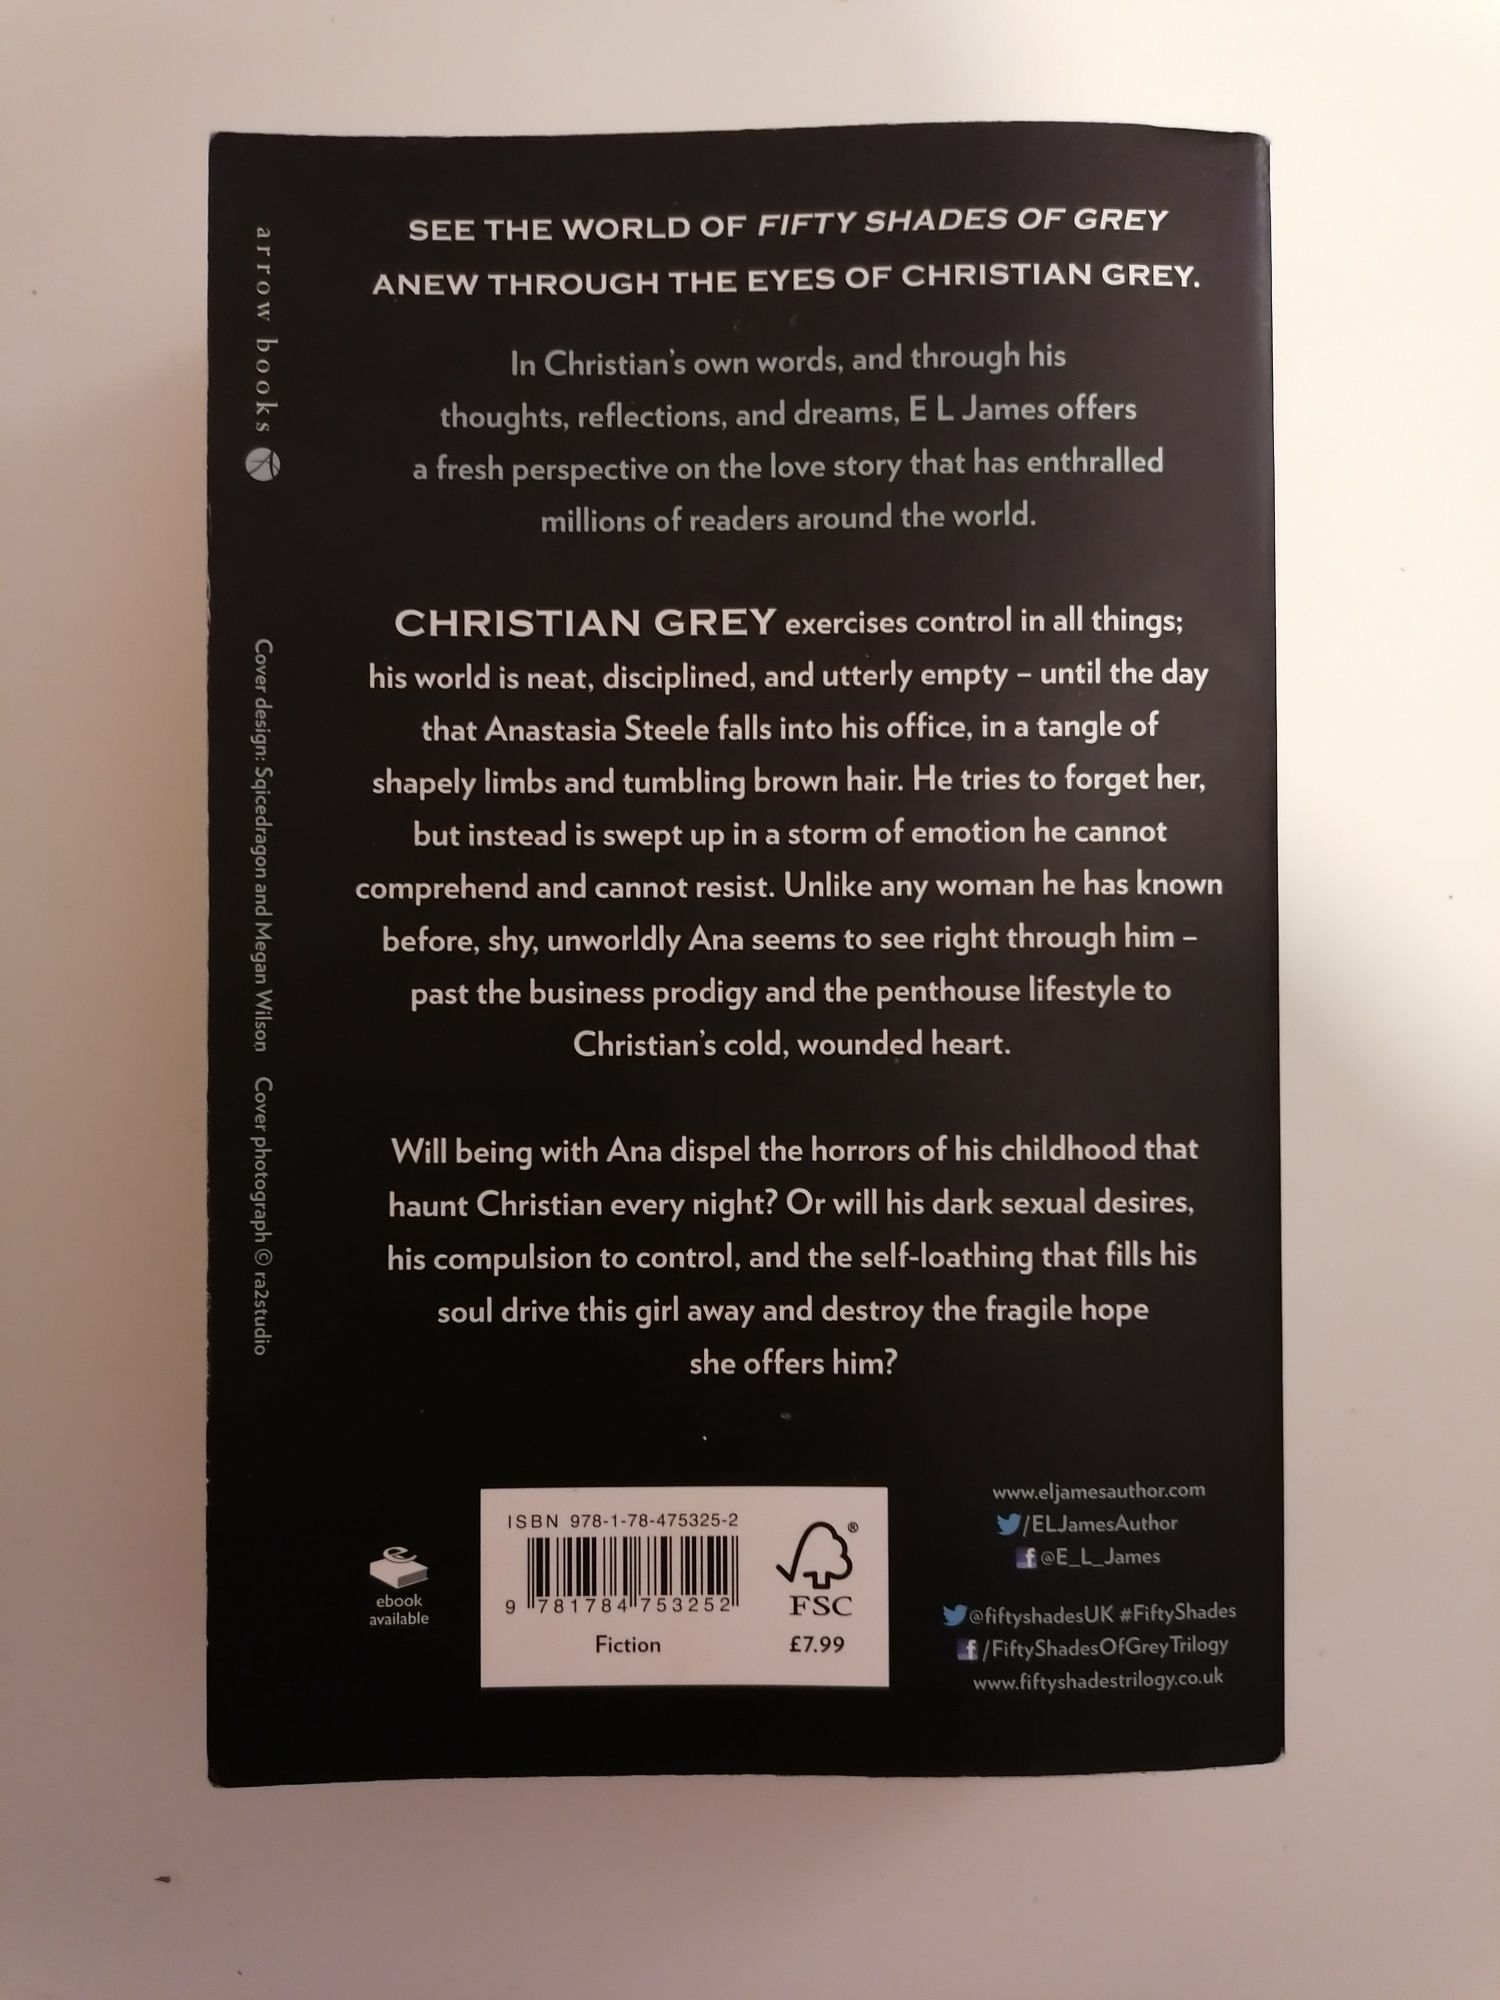 Livro Grey em inglês da história 50 sombras de Grey shades